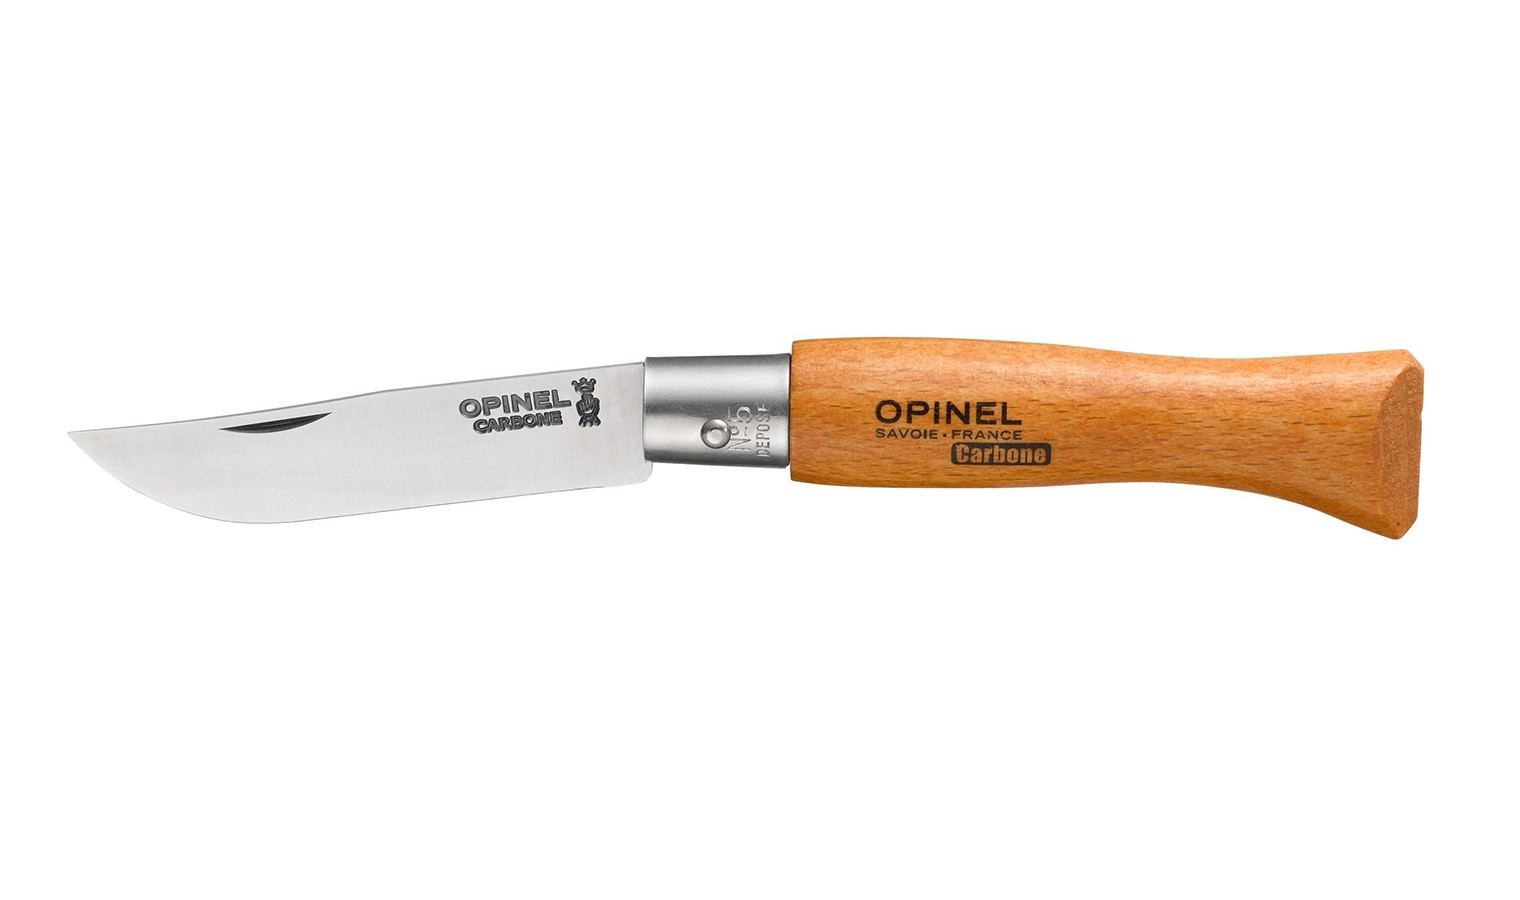 Cuchillos y navajas Opinel: calidad, diseño y precisión en tu cocina